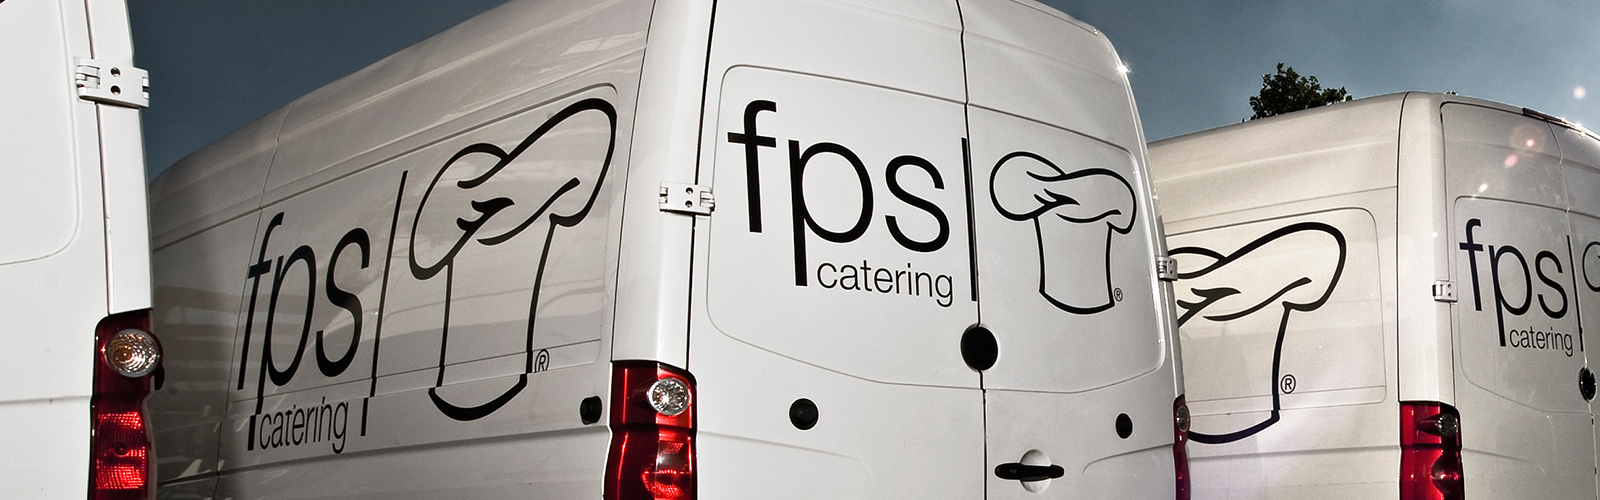 fps catering header lieferservice jobportal logistik